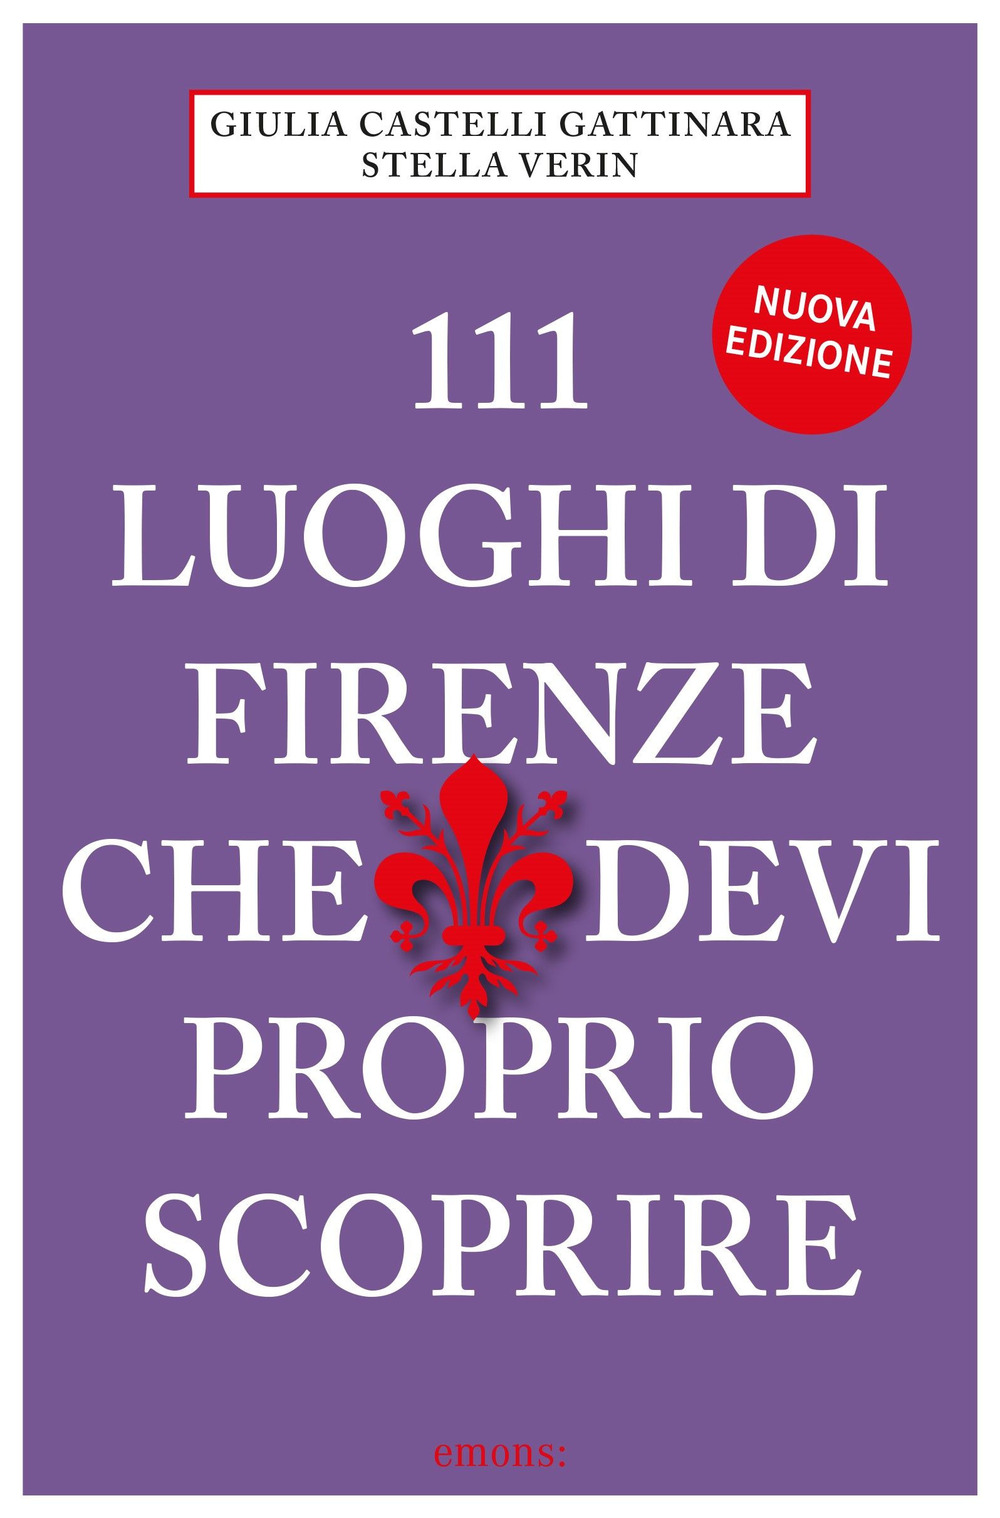 111 LUOGHI DI FIRENZE (nuova edizione) CHE DEVI PROPRIO SCOPRIRE - 9783740813116